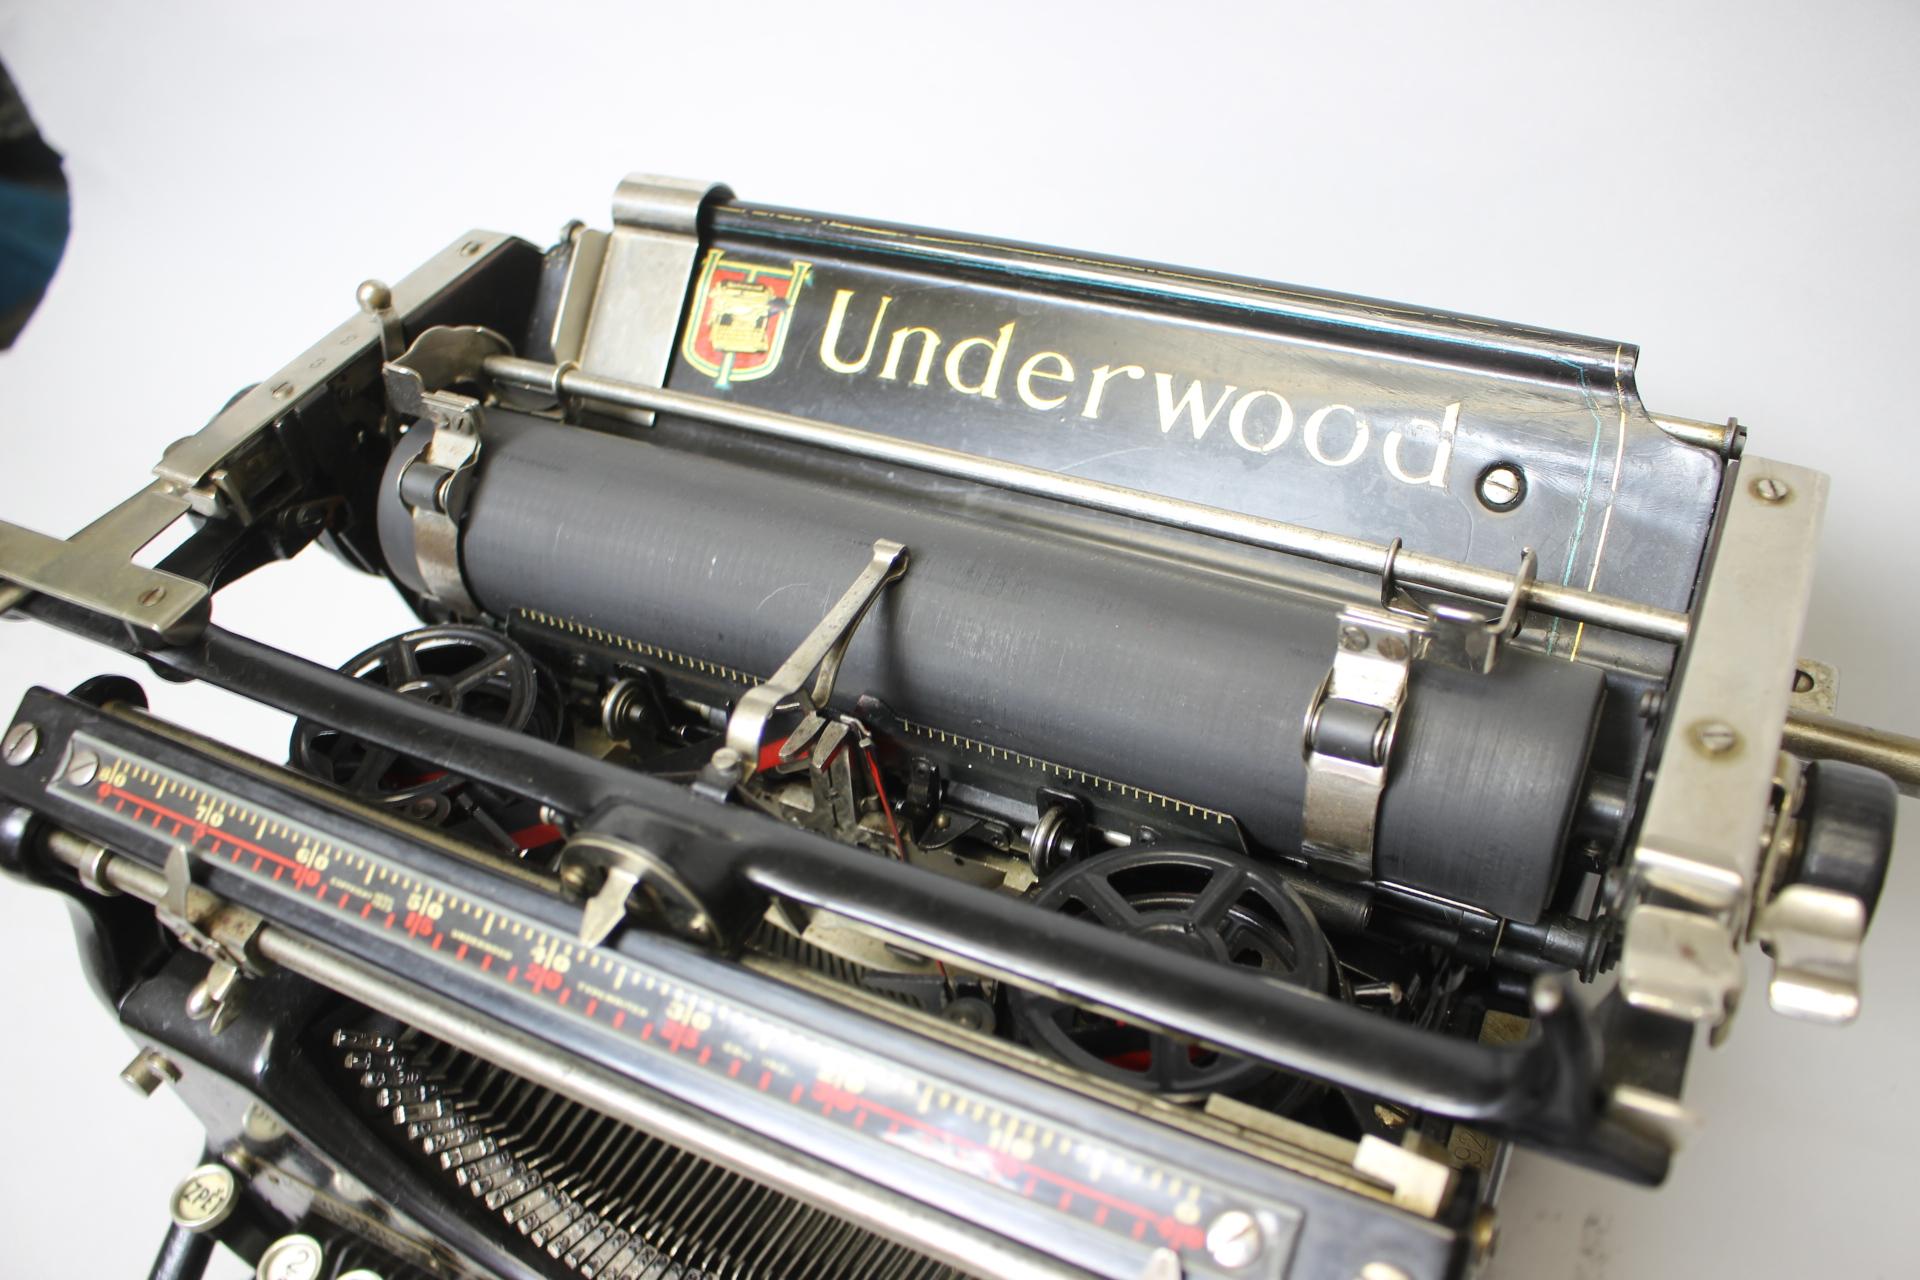 1920 underwood typewriter